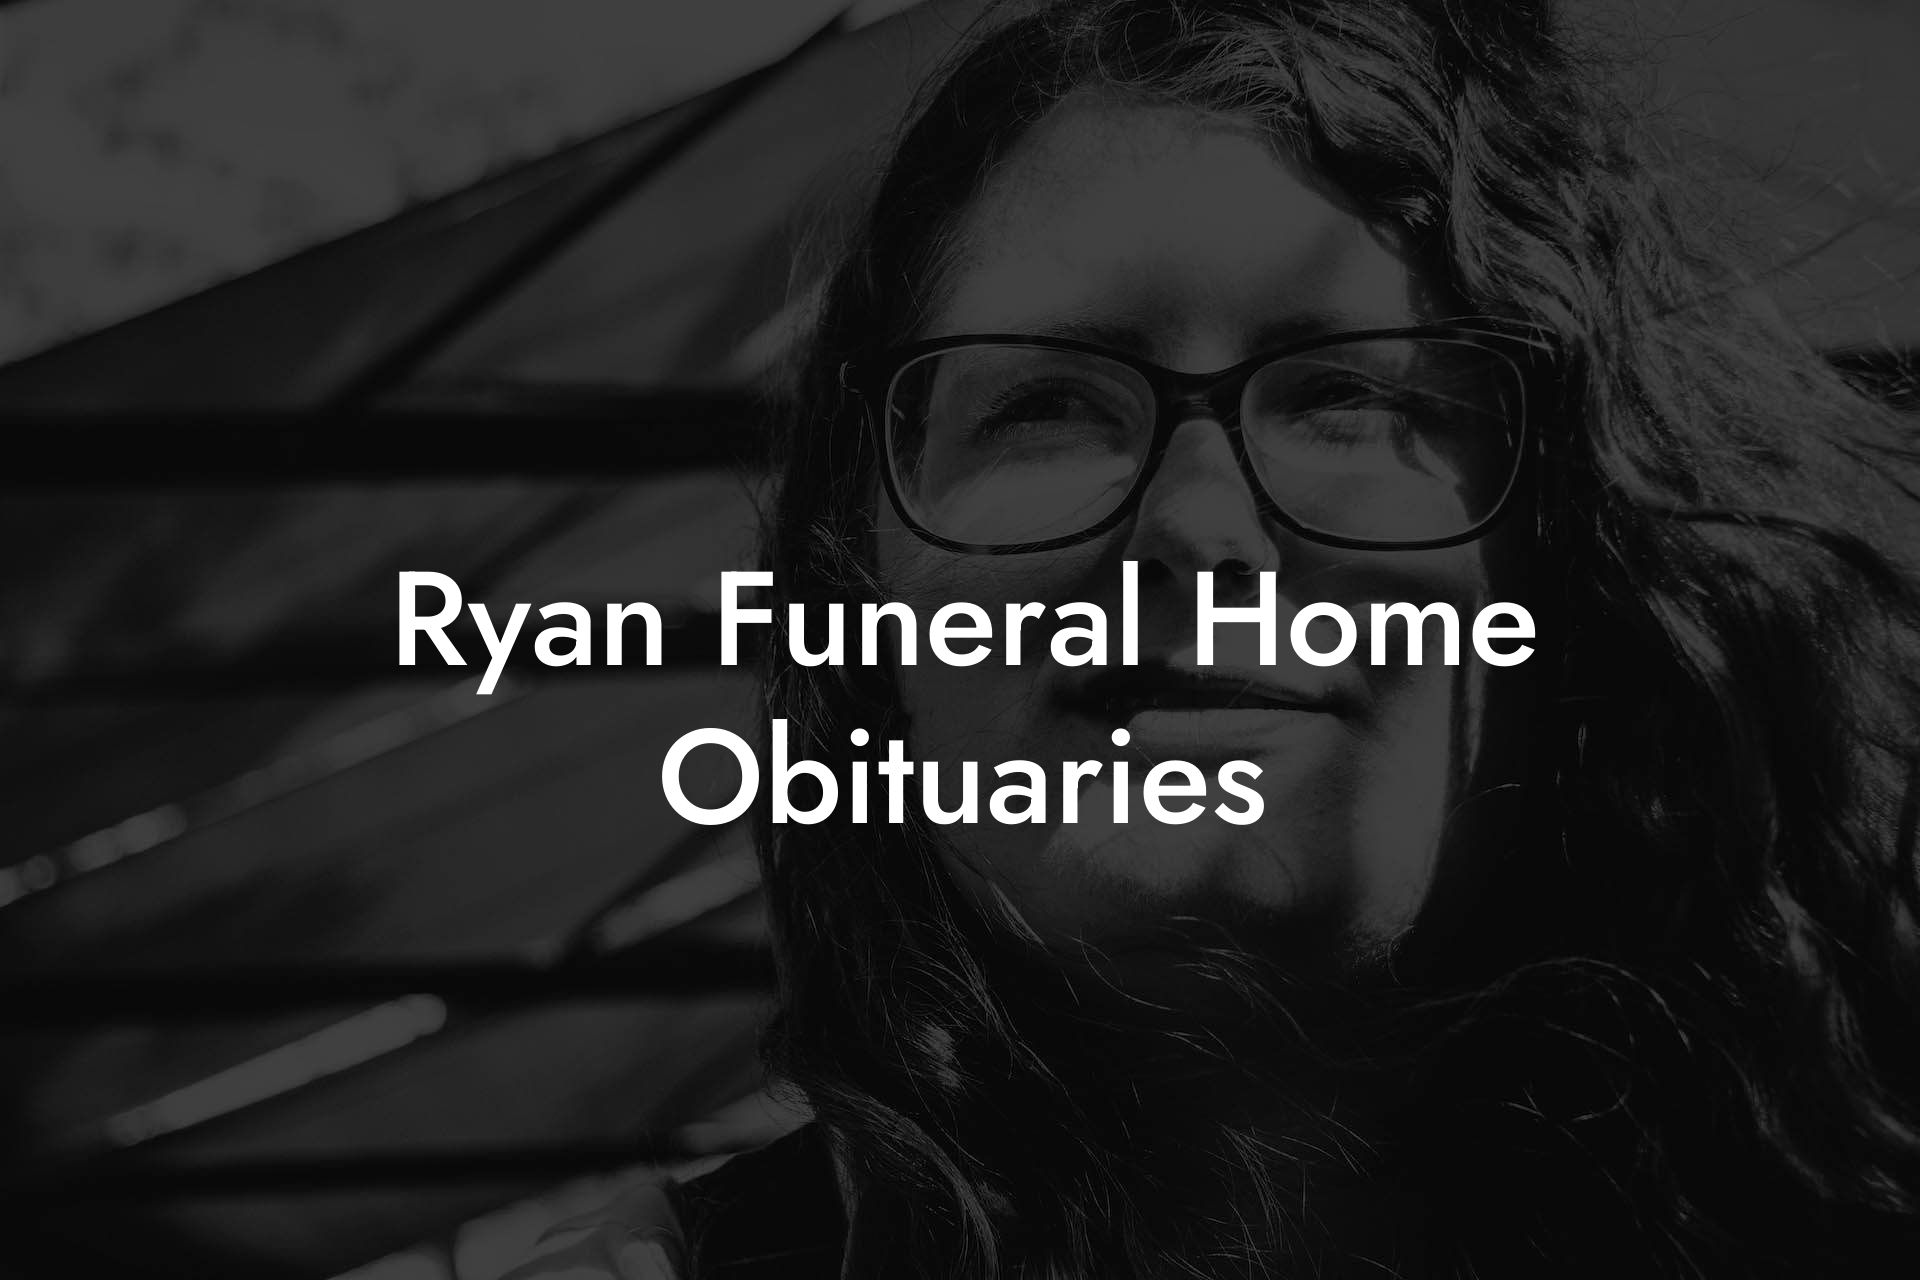 Ryan Funeral Home Obituaries